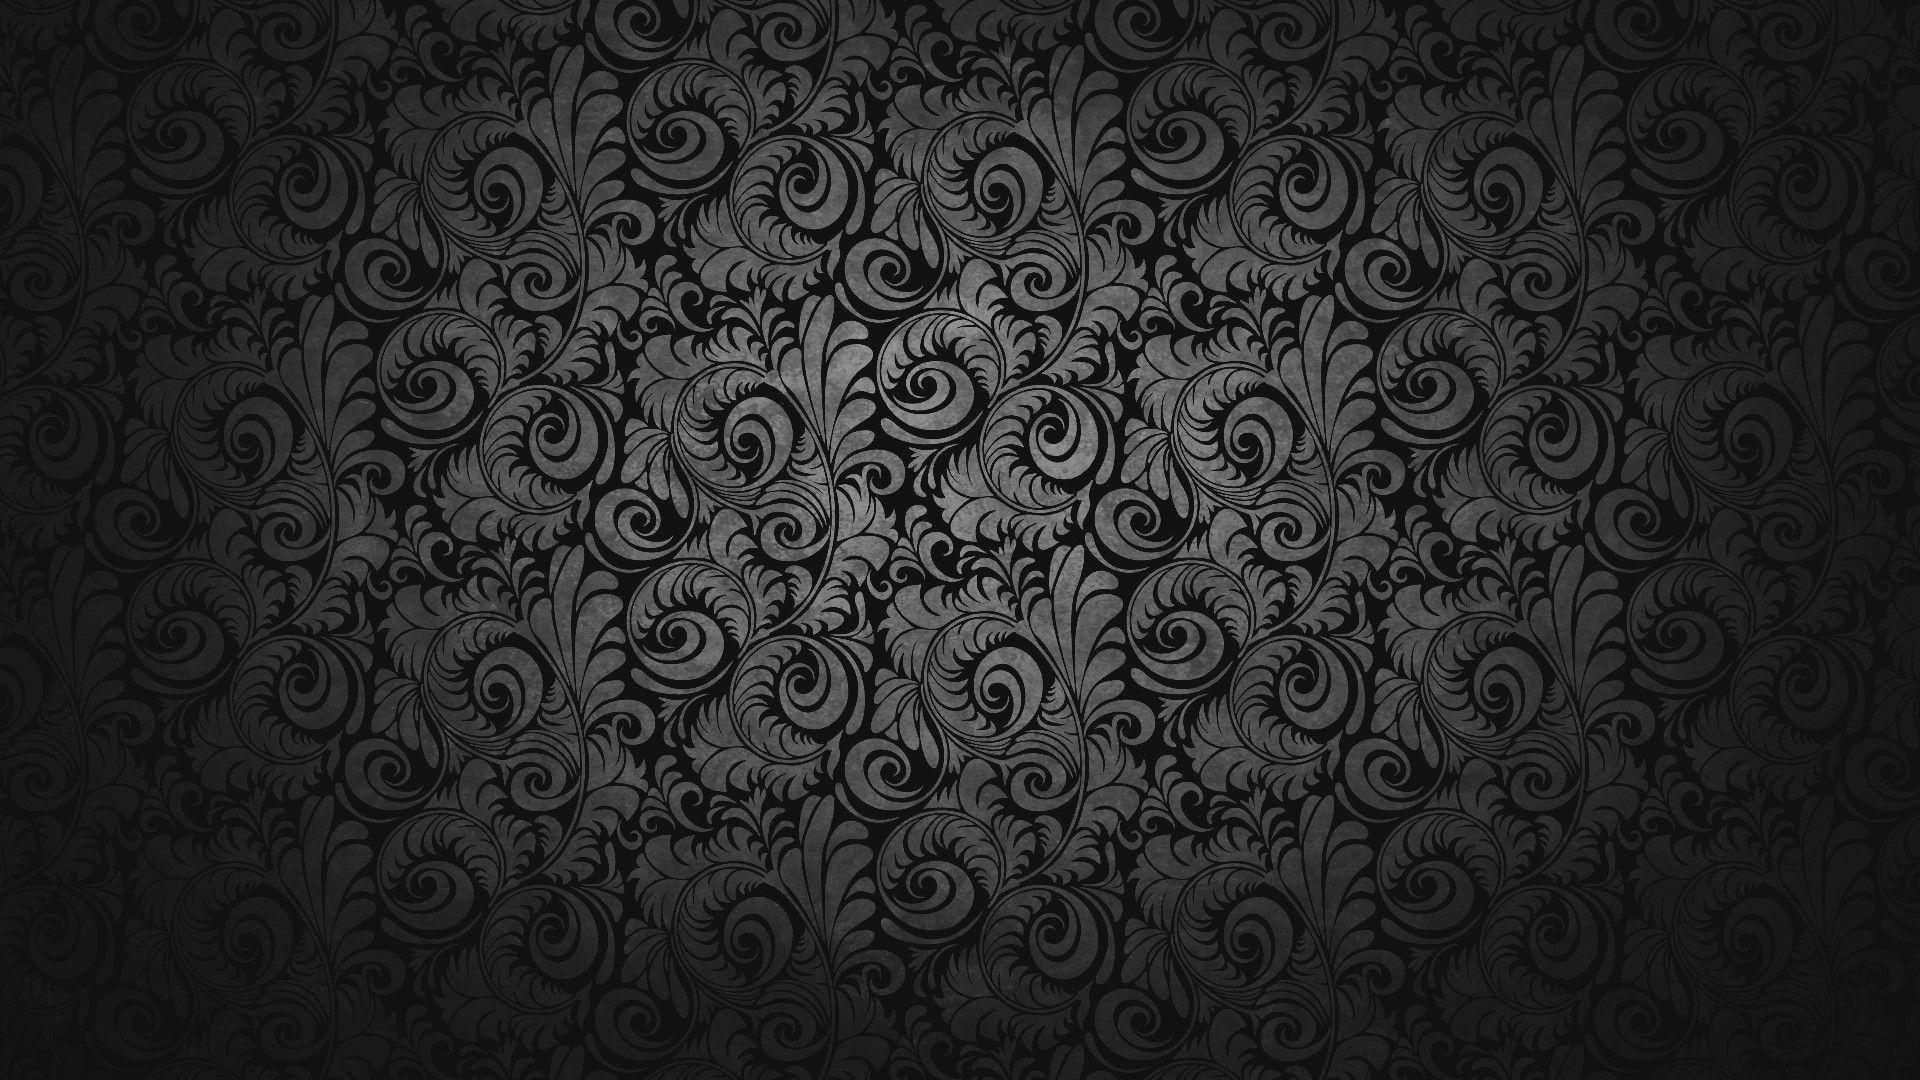 Wallpaper For > 1080p Wallpaper Black